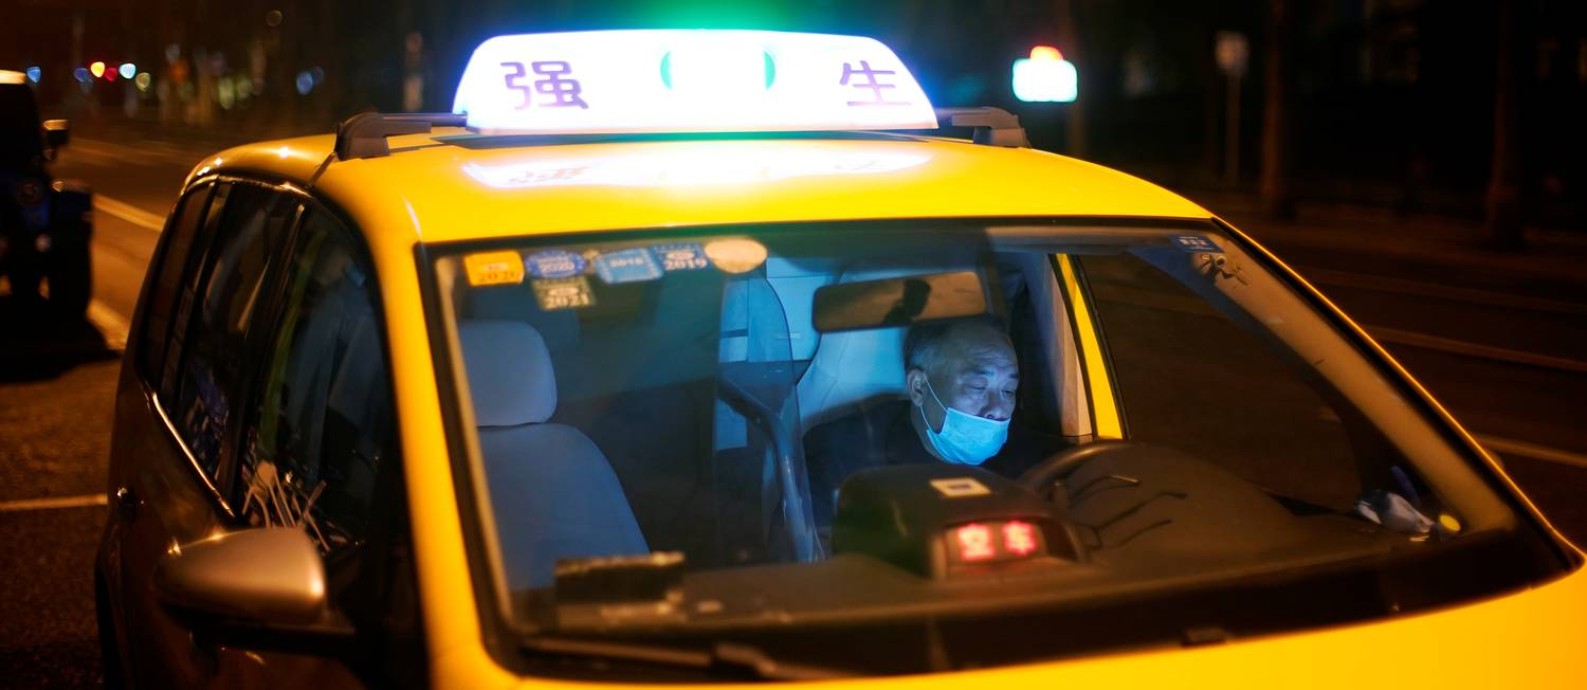 Motorista de táxi em Xangai, na China, com máscara contra o coronavírus; profissionais estão entre os mais expostos com a epidemia de Covid-19 Foto: ALY SONG / REUTERS